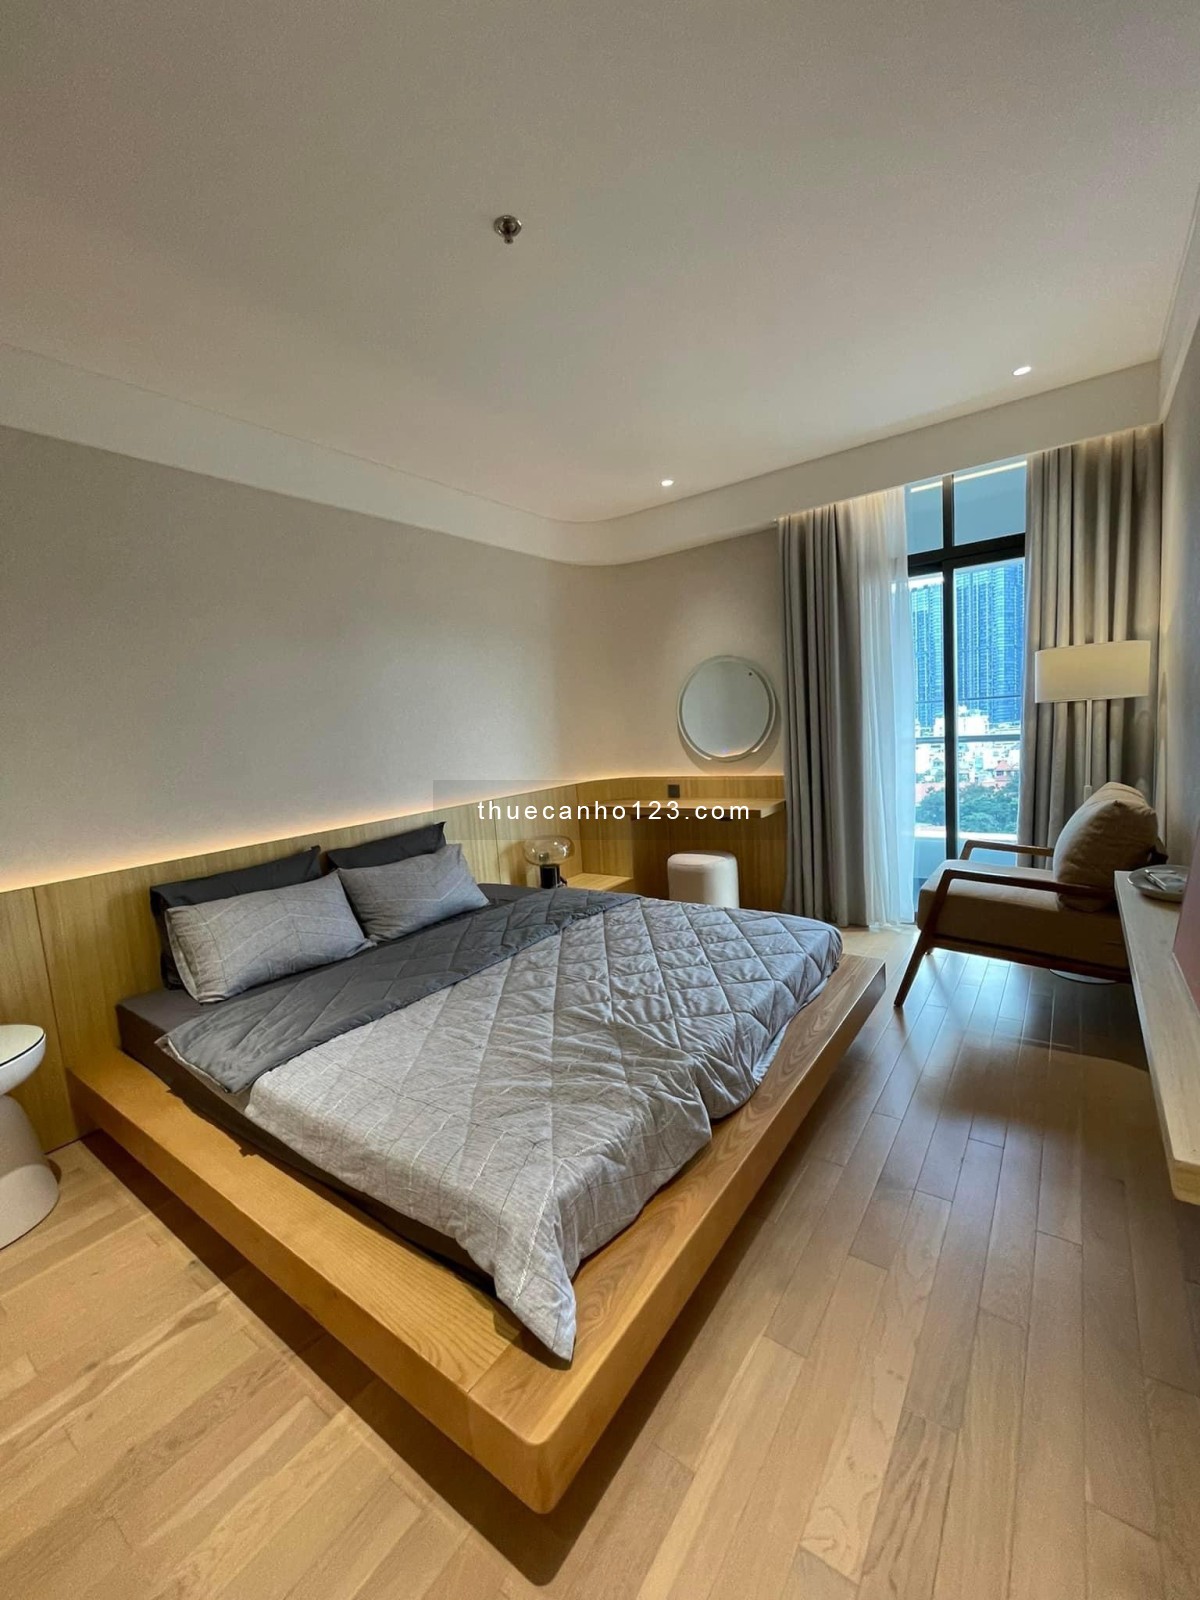 Phòng quản lý kinh doanh Sunwah Pearl cho thuê căn hộ đẹp giá tốt nhất thị trường LH: 0888 998 222